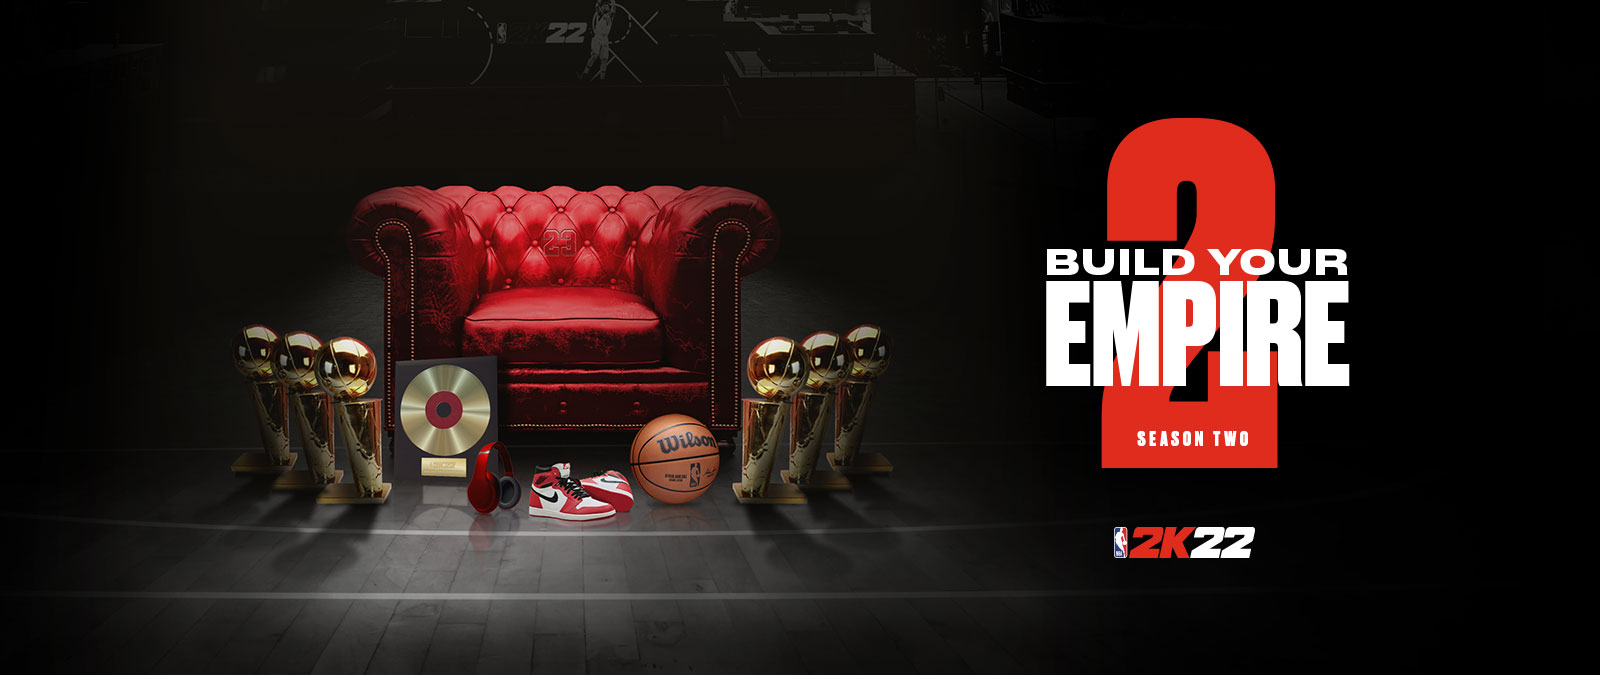 Opbyg dit imperie i sæson 2 af NBA 2k22. Flere trofæer, der står rundt om en rød læderstol.